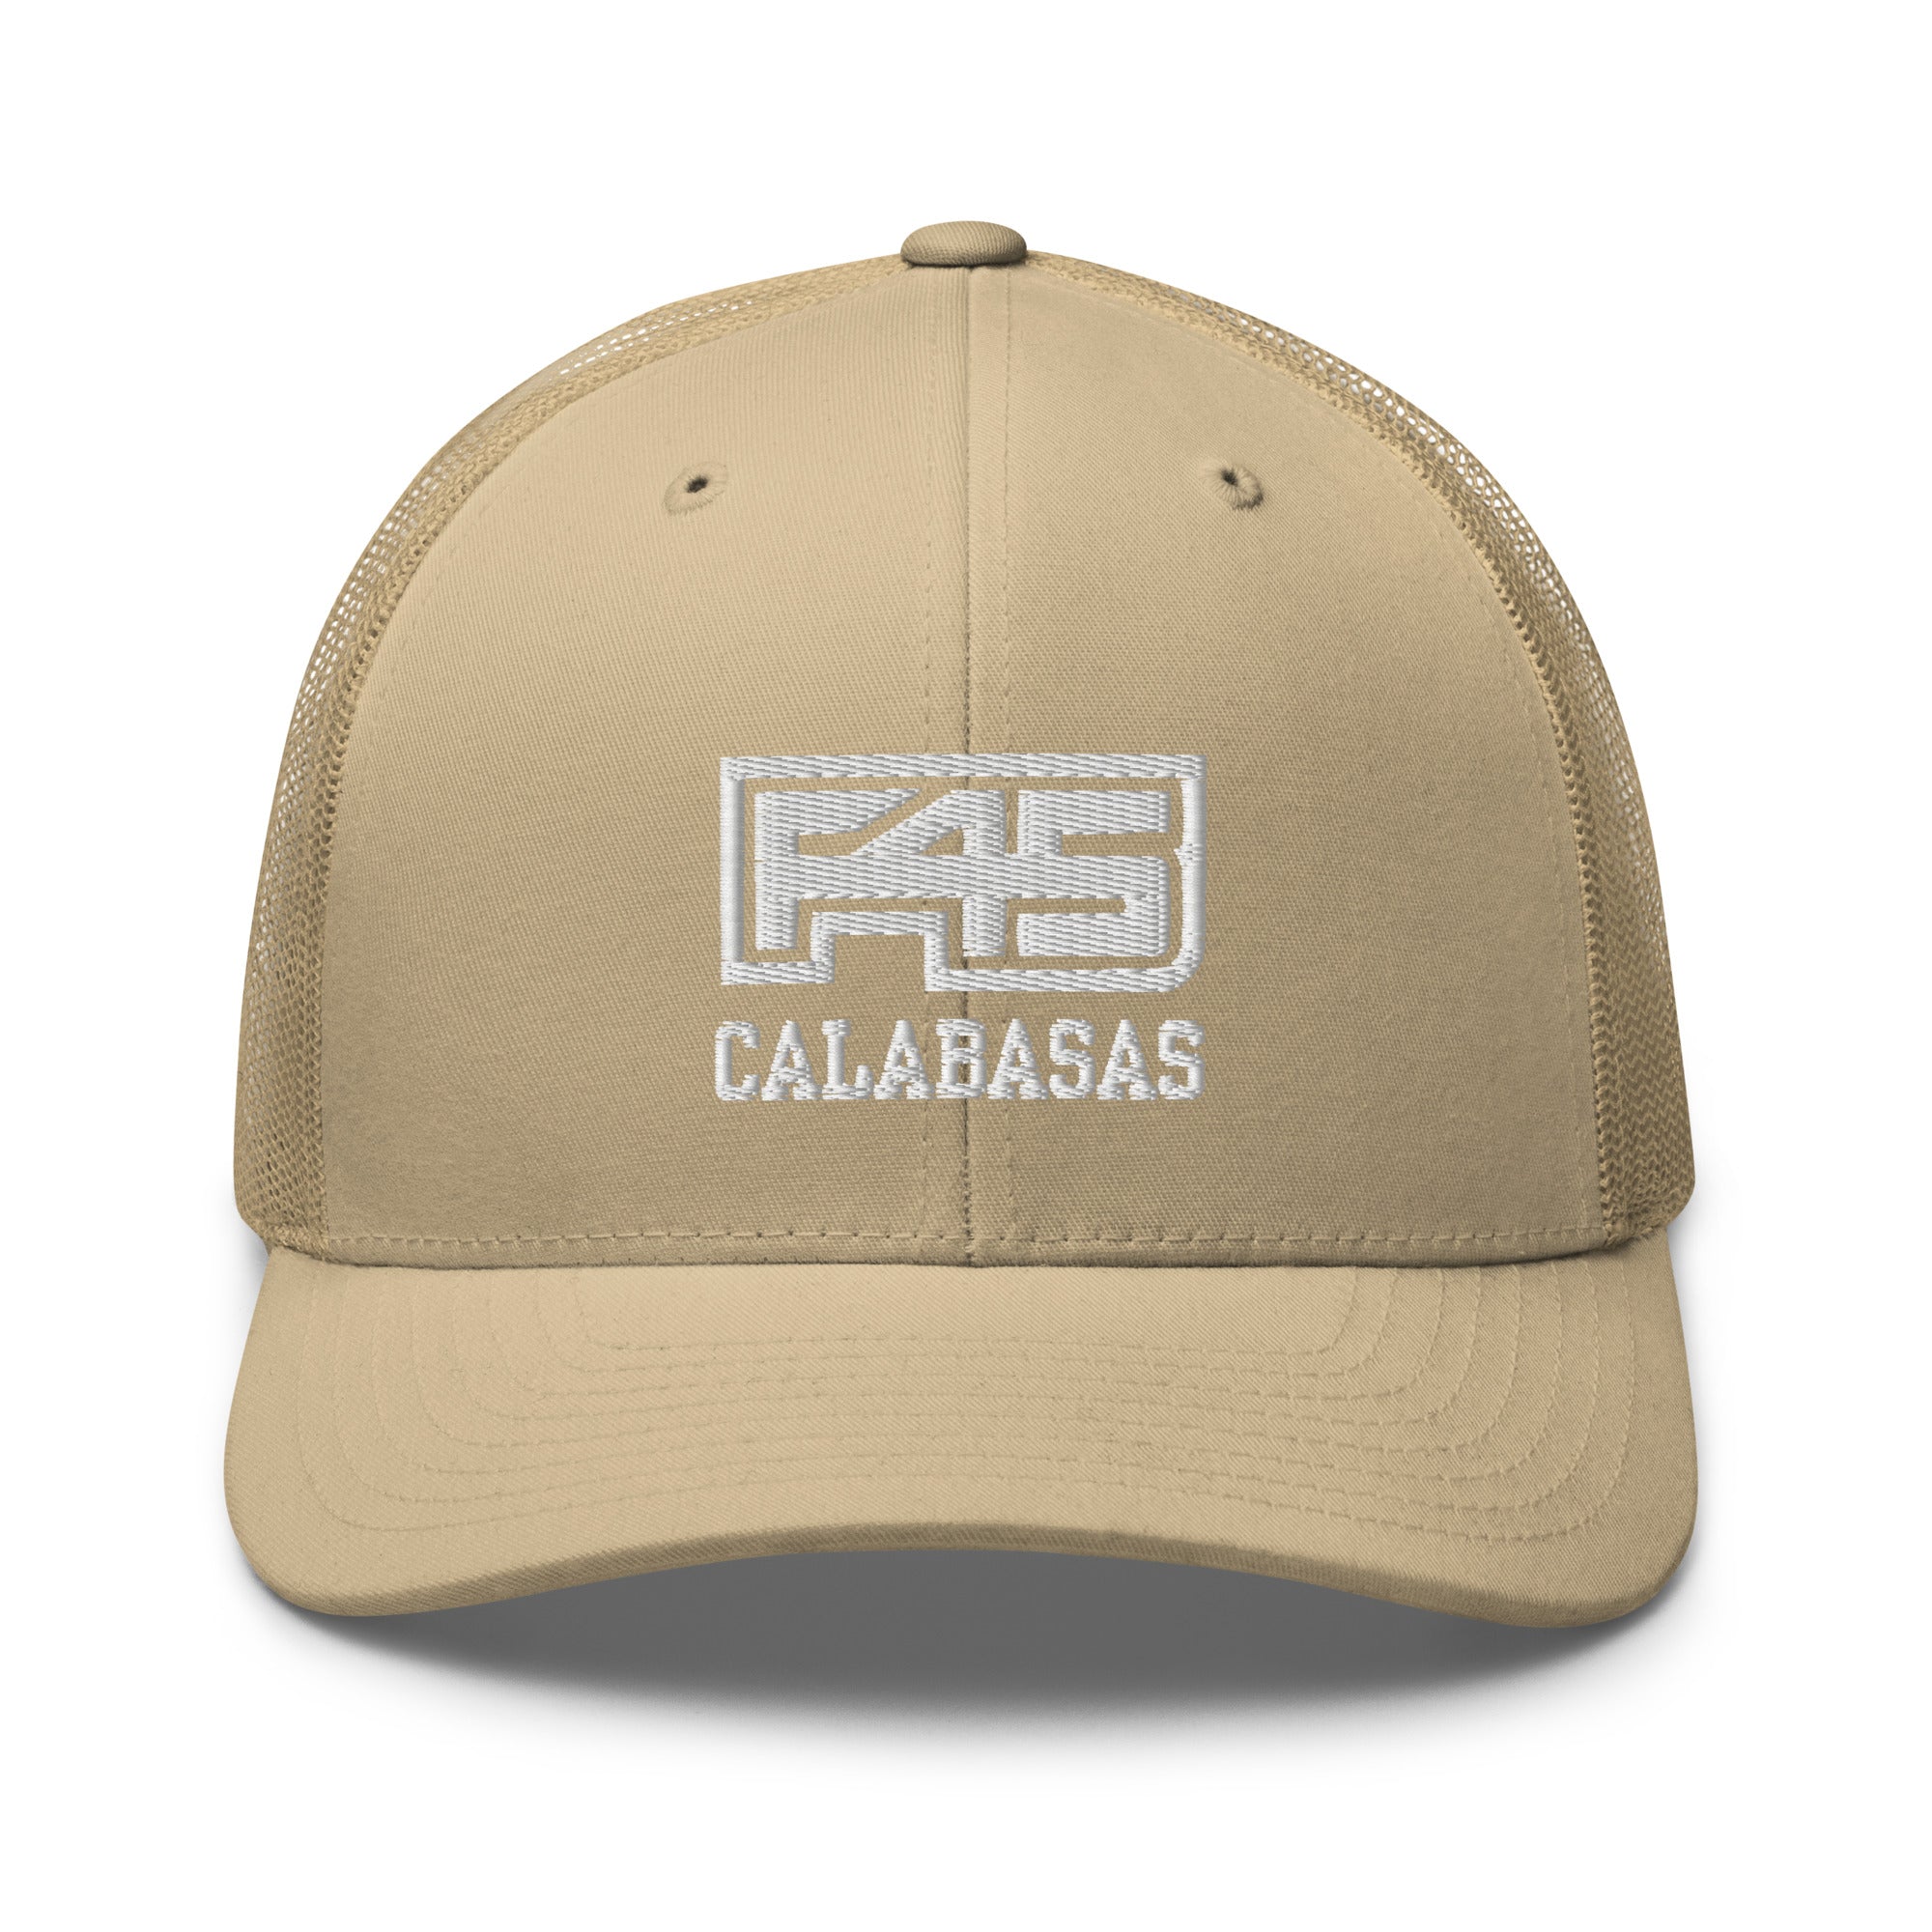 F45 Calabasas Trucker Hat